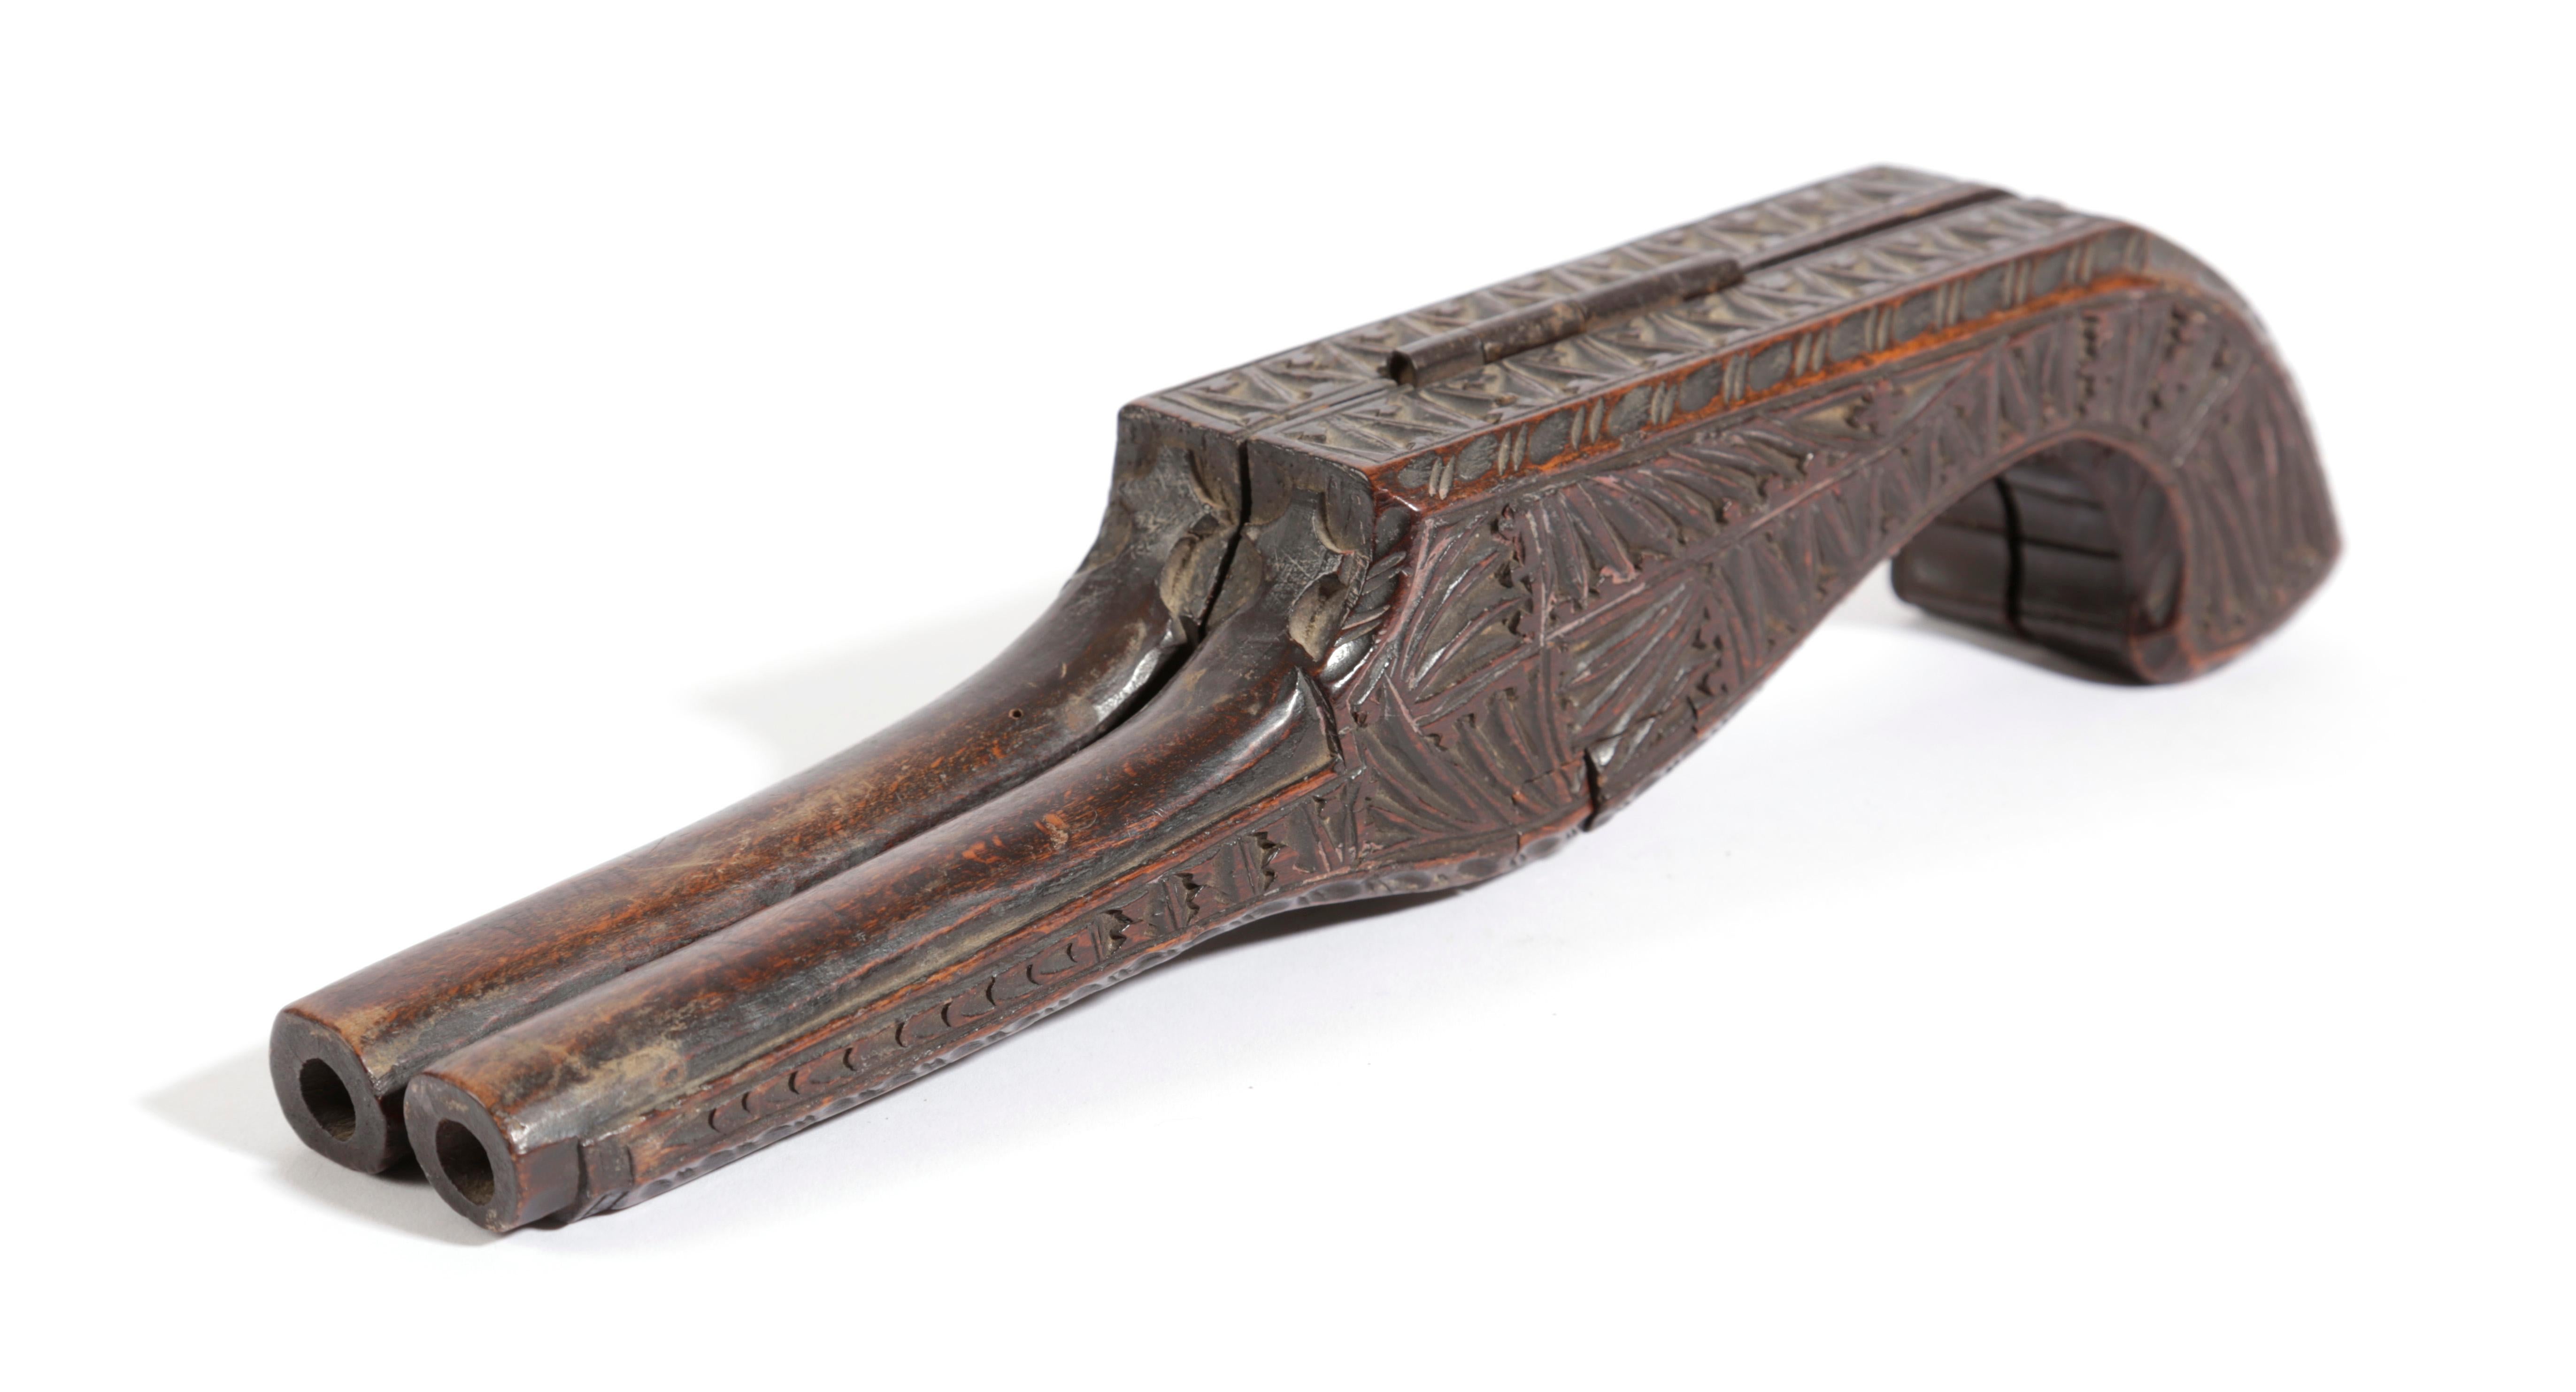 Ein feiner und seltener !9. Jahrhundert handgeschnitzter, antiker Stiefelknecht, um Reitstiefel auszuziehen,  in der ungewöhnlichen Form einer Pistole.

Dies ist eine seltene Entdeckung und entfaltet sich zu einer bootjack mit schön geschnitzt, um